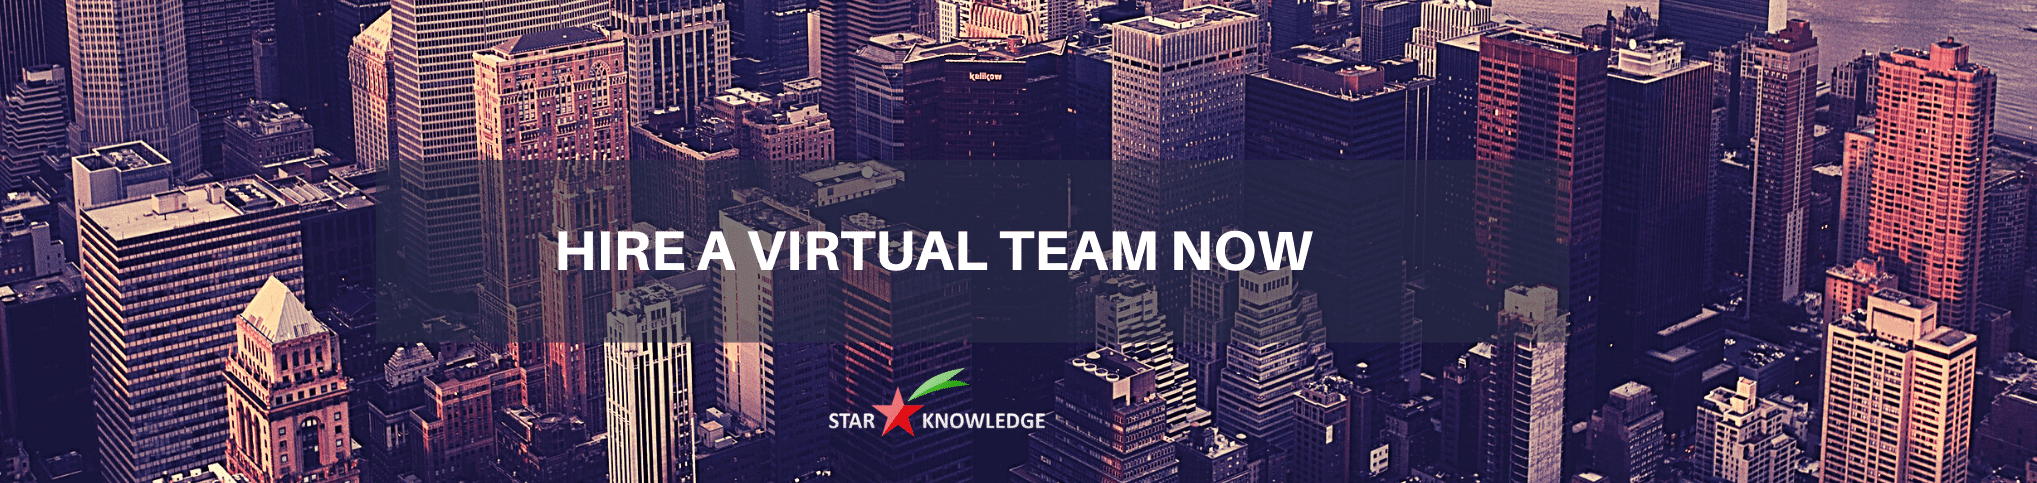 Hire virtual team